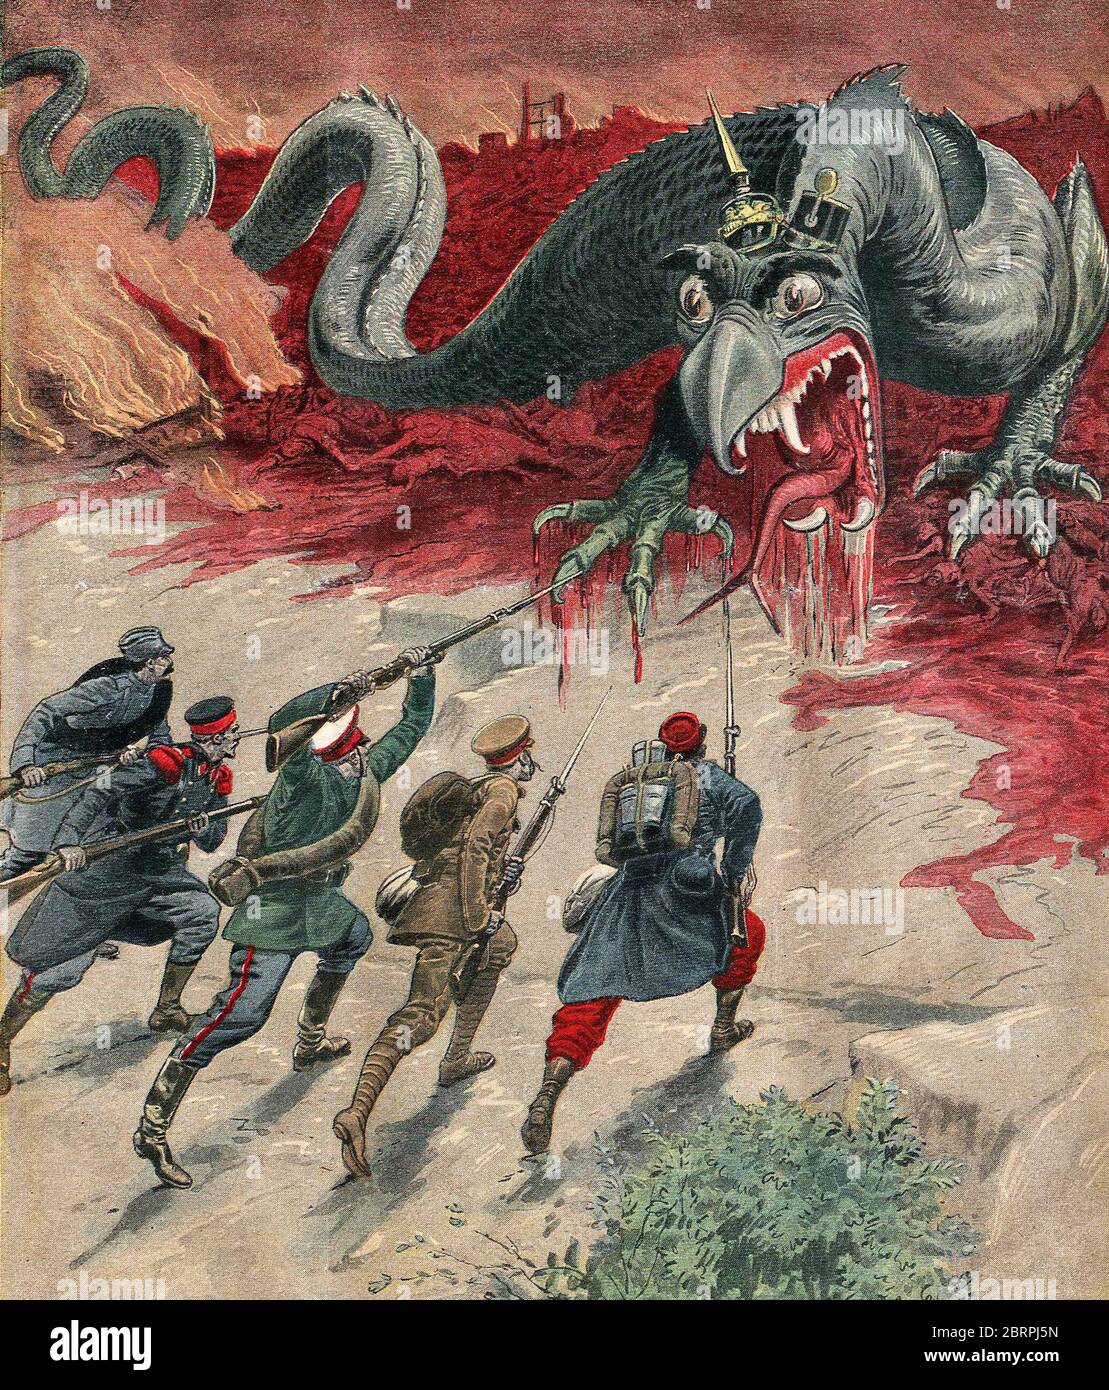 ¡sus au monstre! ¡muerte al monstruo! Chase el monstruo y destruirlo!), Francia, 1914. Wilhelm II (1859-1941) Emperador alemán y rey de Prusia. Foto de stock